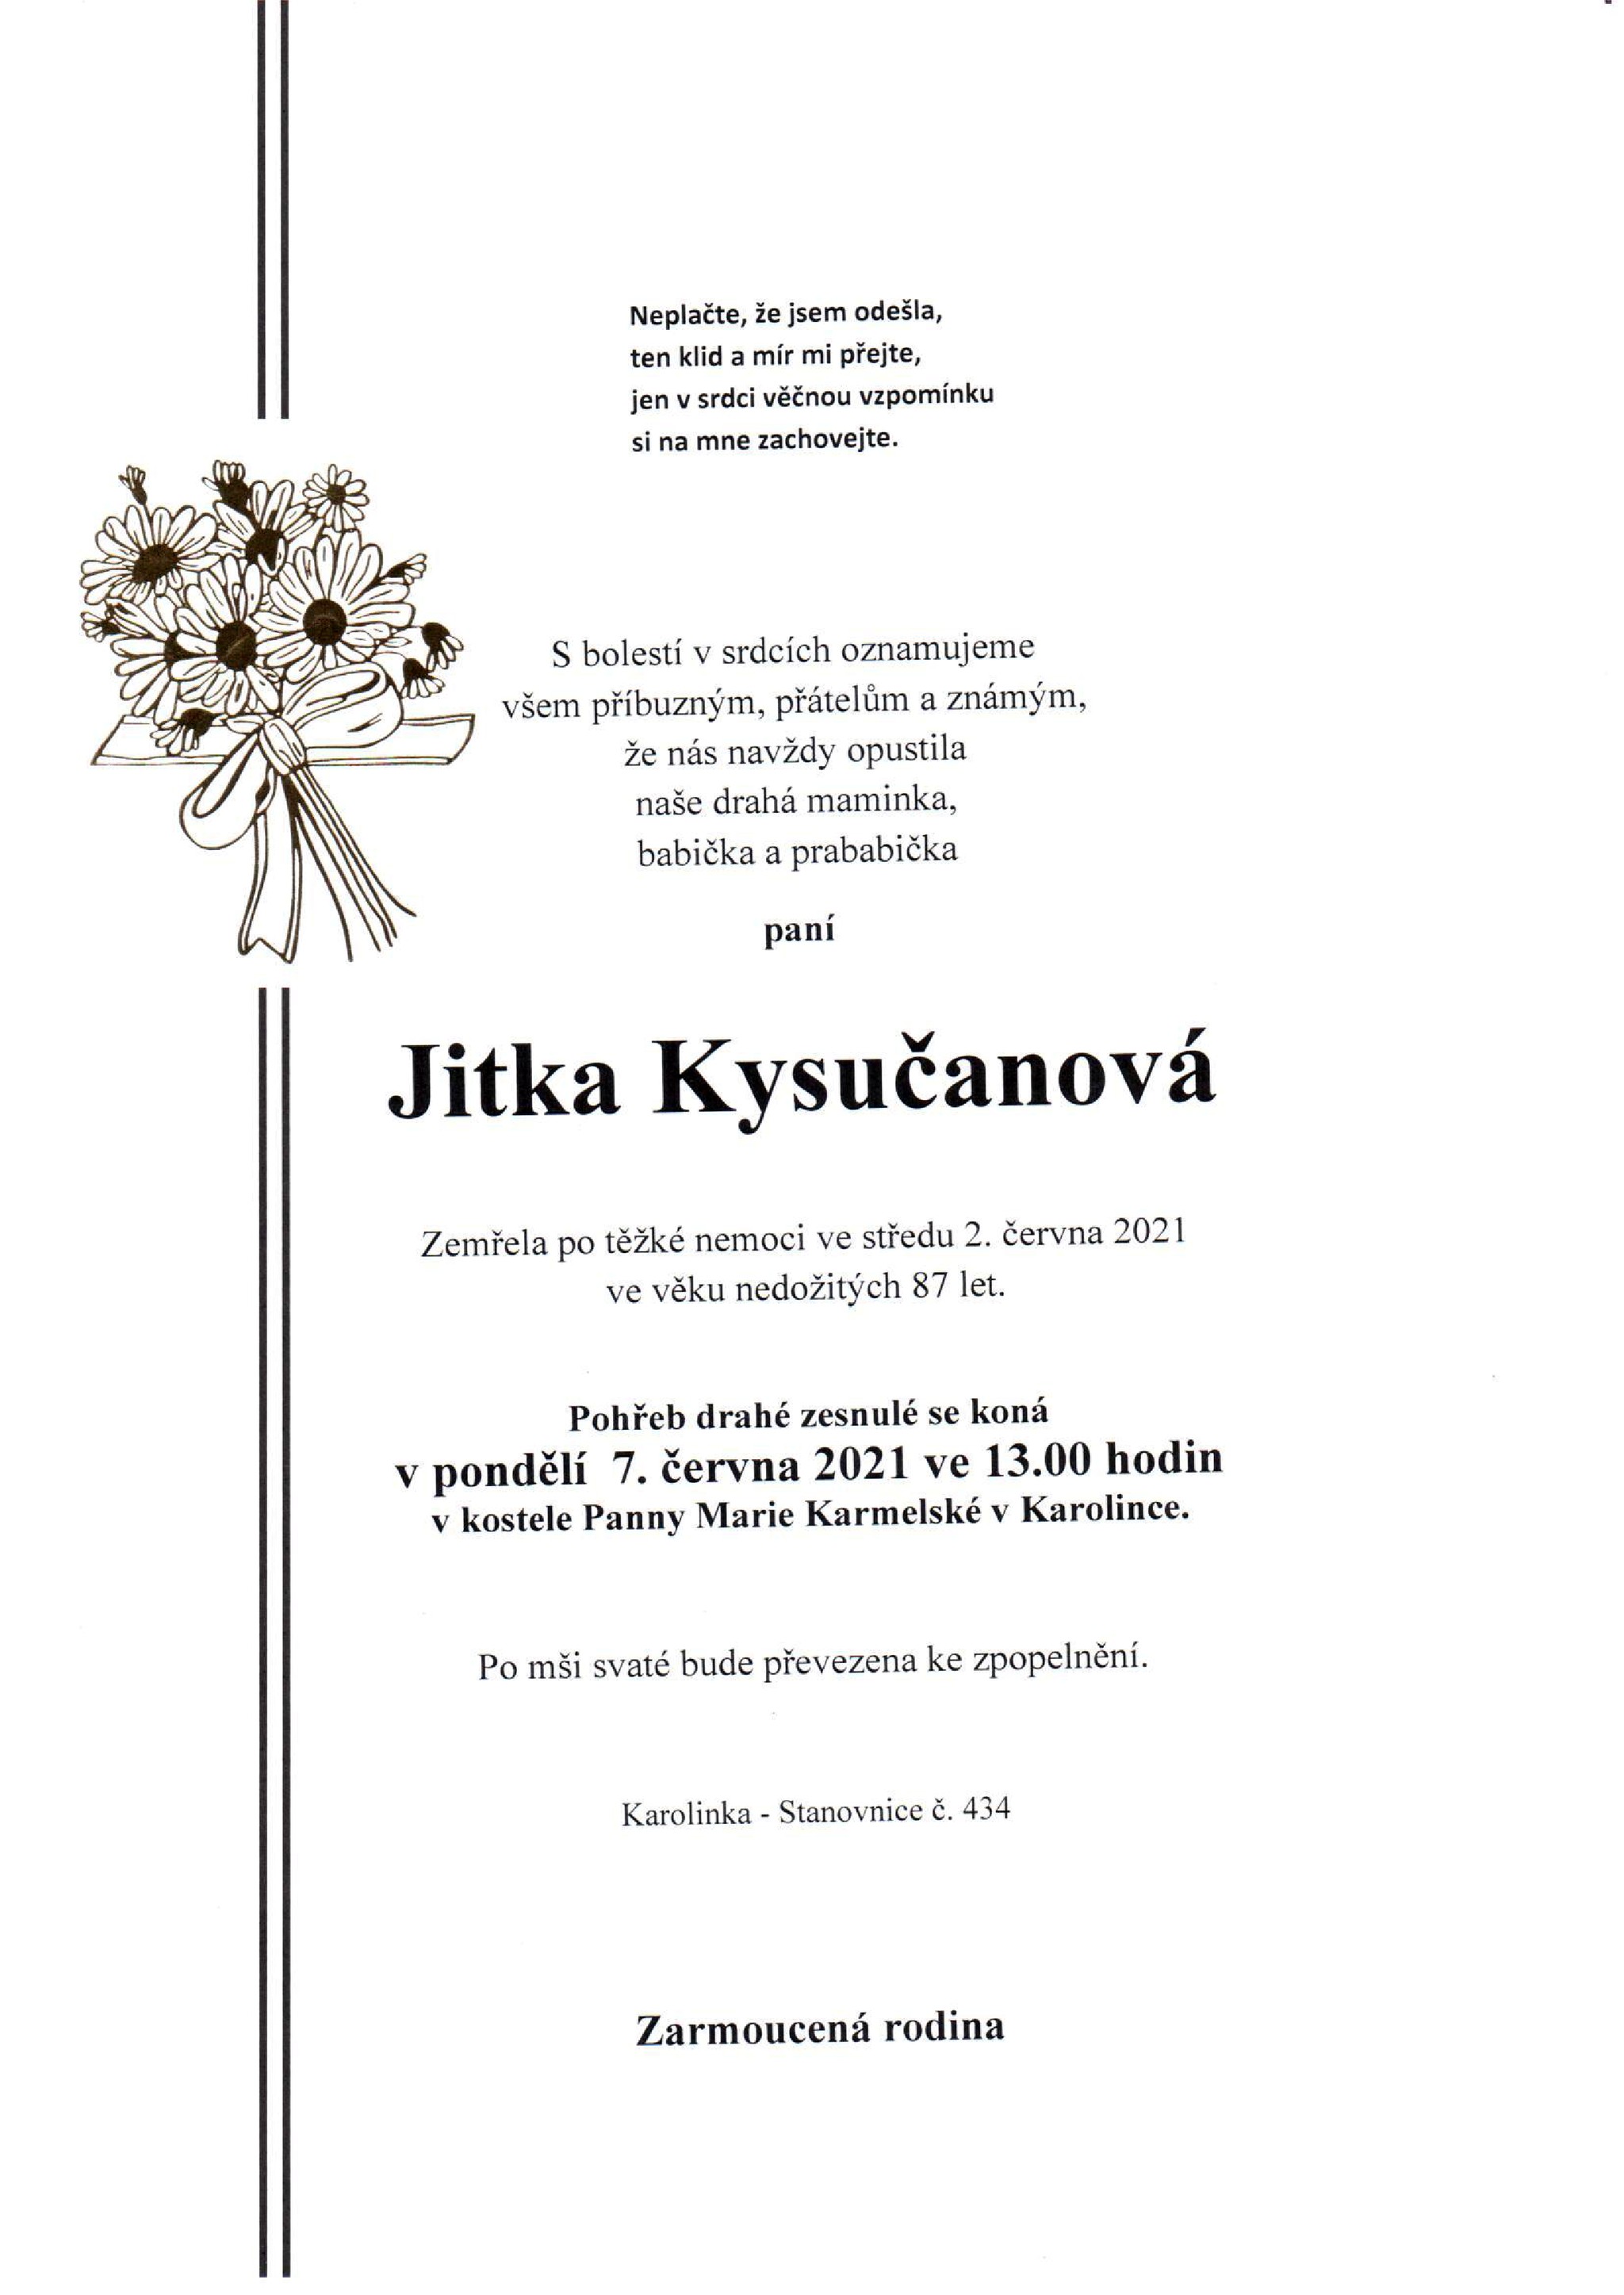 Jitka Kysučanová